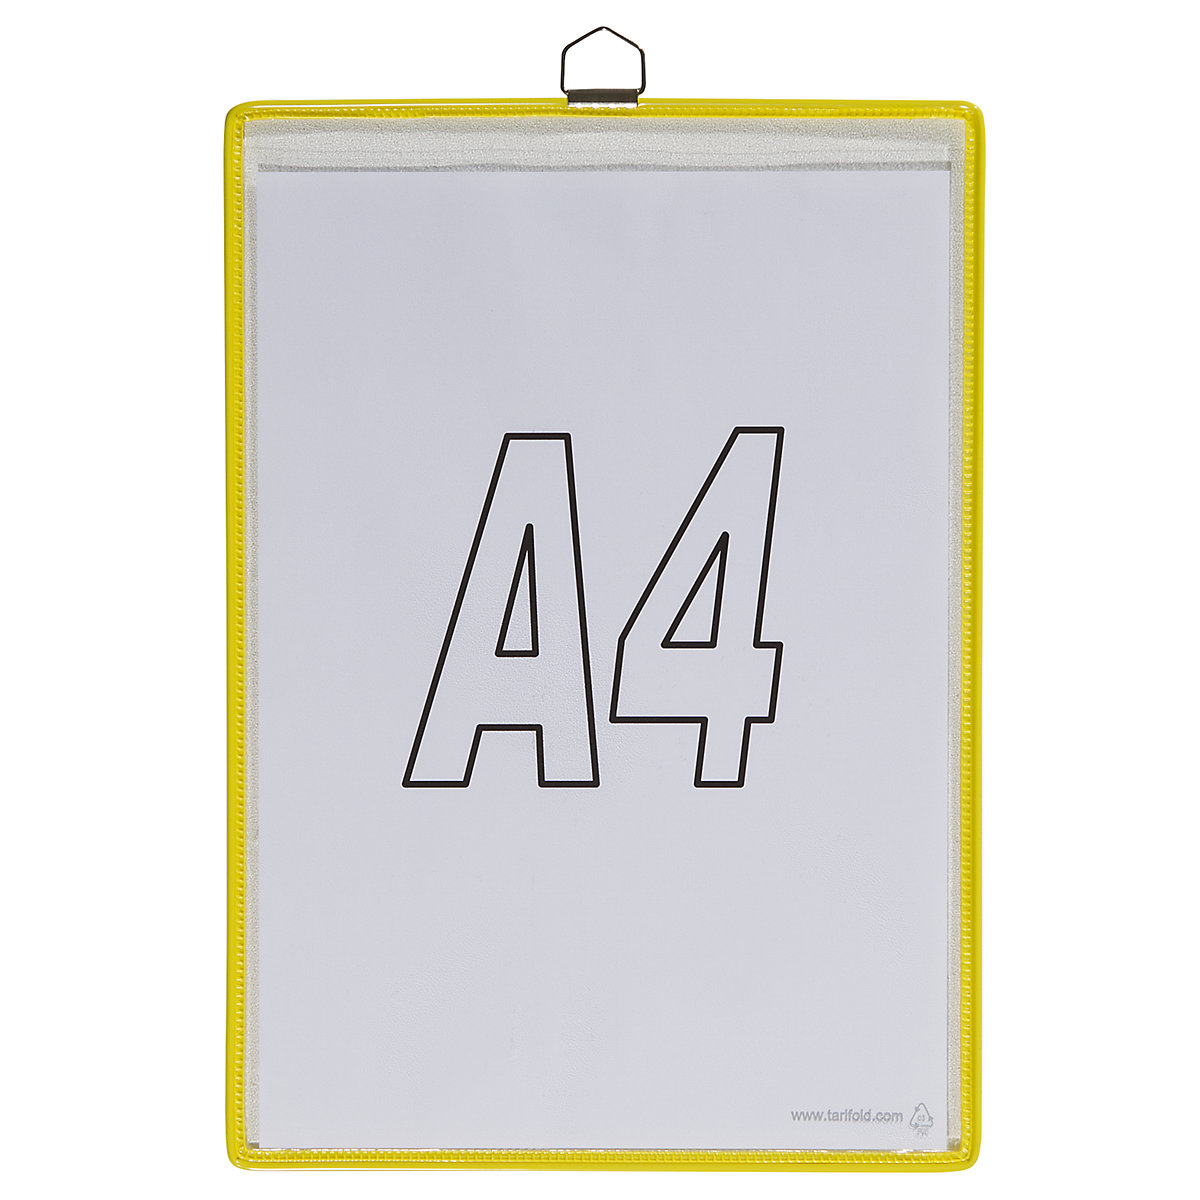 Viseća prozirna košuljica – Tarifold, za format DIN A4, u žutoj boji, pak. 10 kom.-5